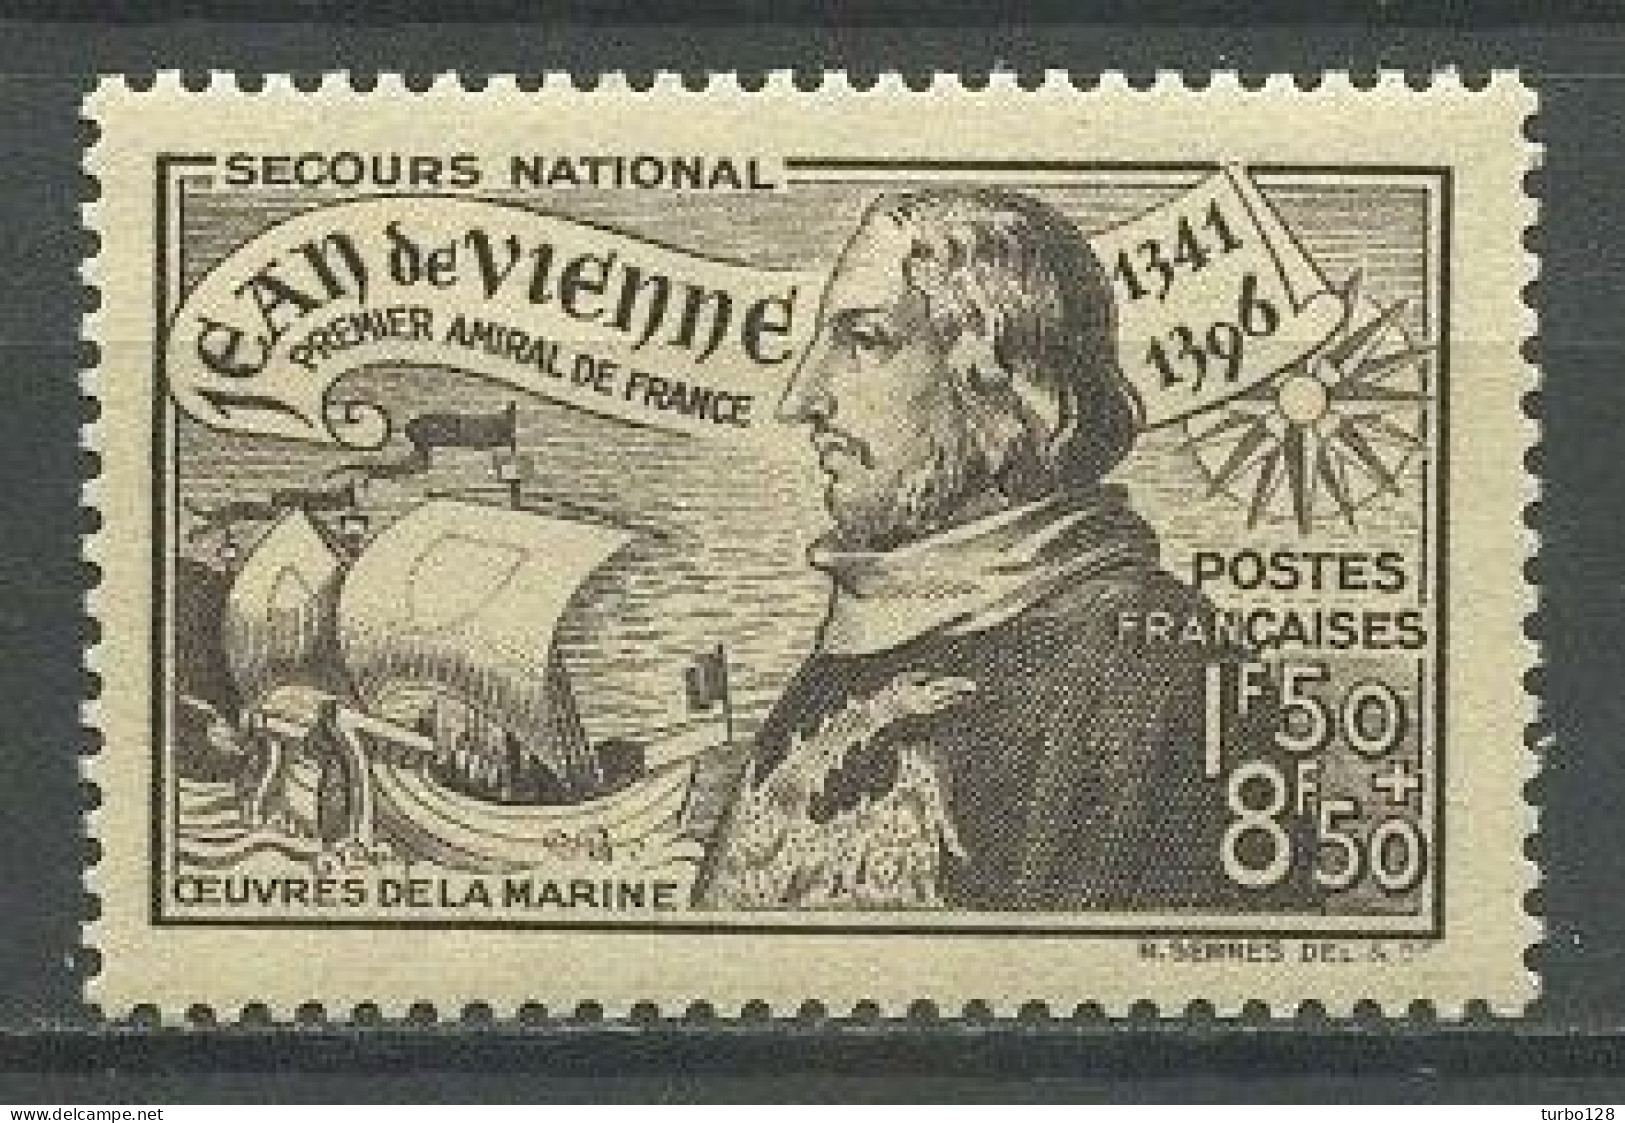 FRANCE 1942 N° 544 ** Neuf MNH Superbe C 1.40 € Jean De Vienne Amiral De France Bateaux Voiliers Sailboats Maritime - Nuovi